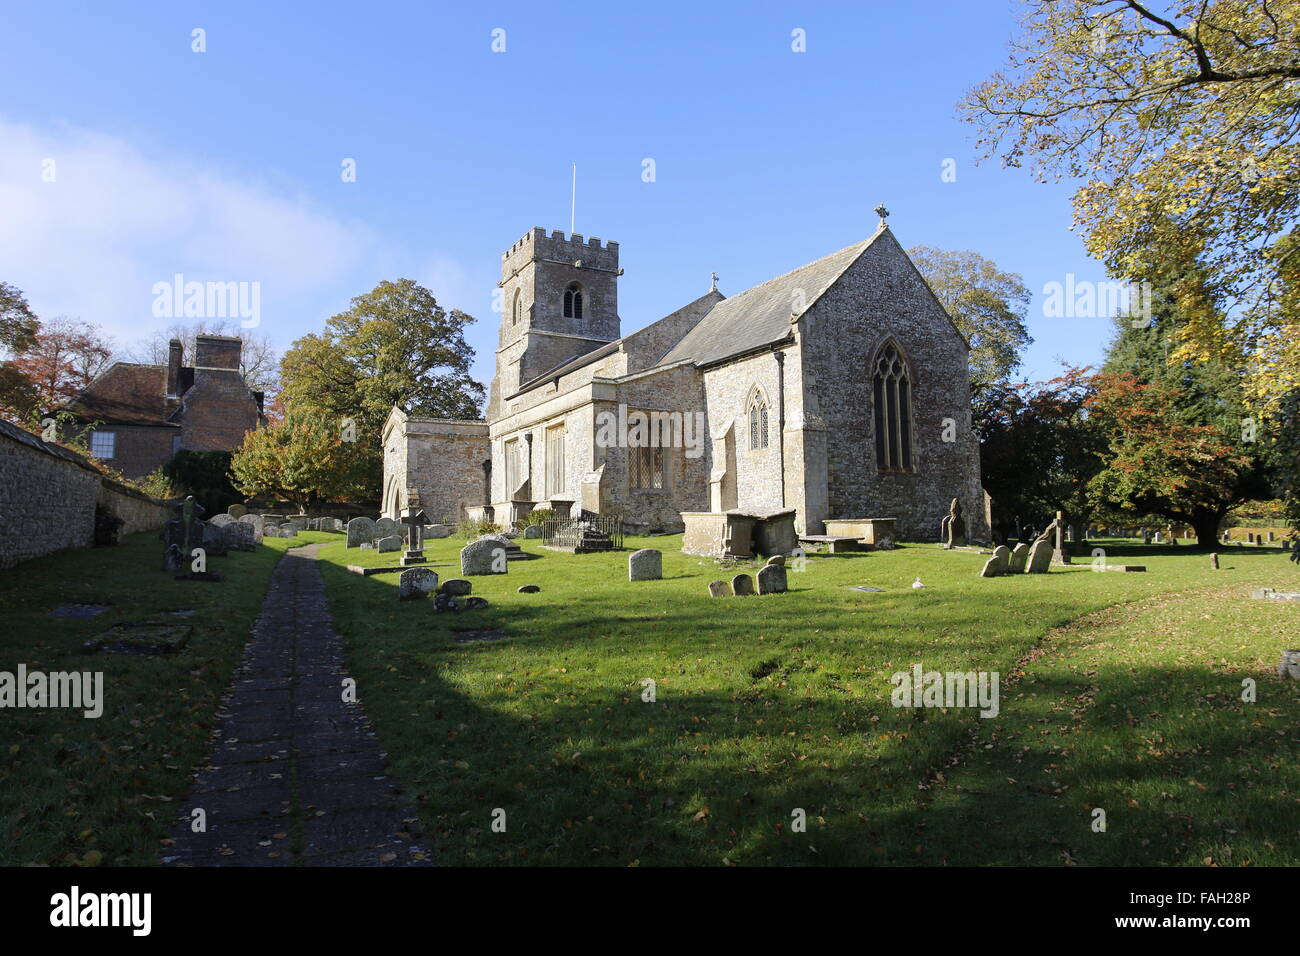 La Iglesia de San Jorge Ogbourne St George Wiltshire, Inglaterra Foto de stock